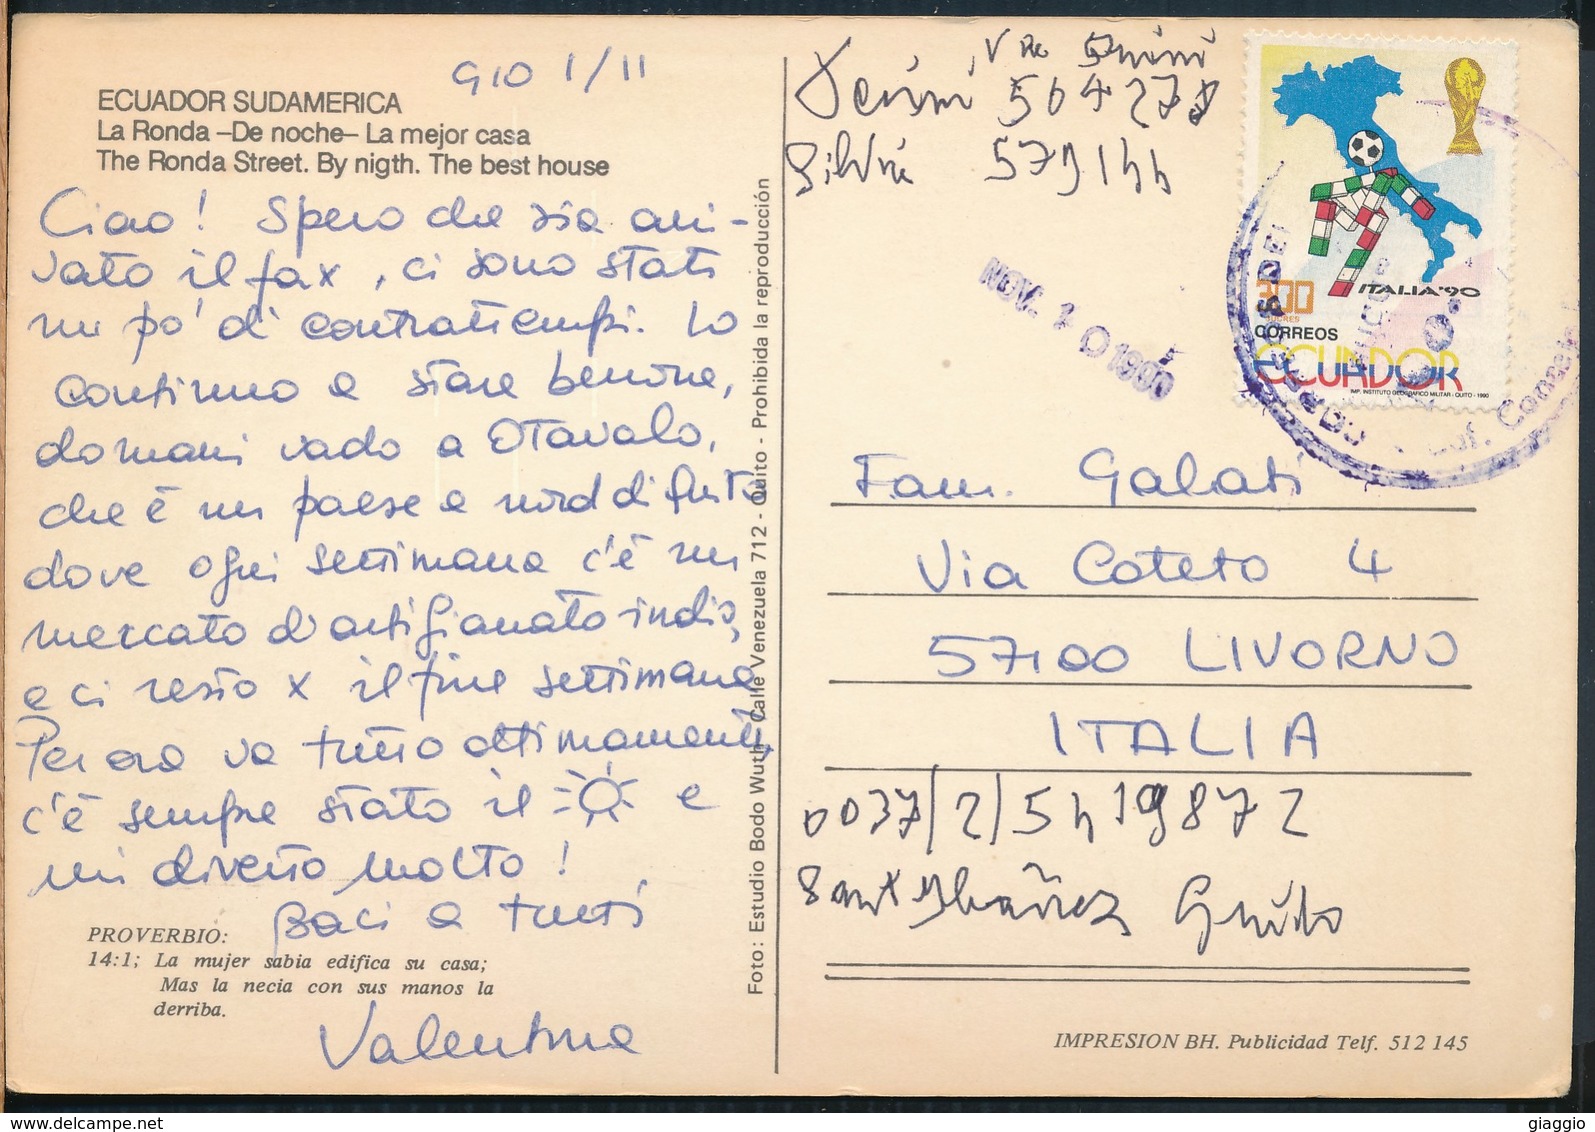 °°° 19534 - ECUADOR - LA RONDA , DE NOCHE - 1990 With Stamps °°° - Ecuador